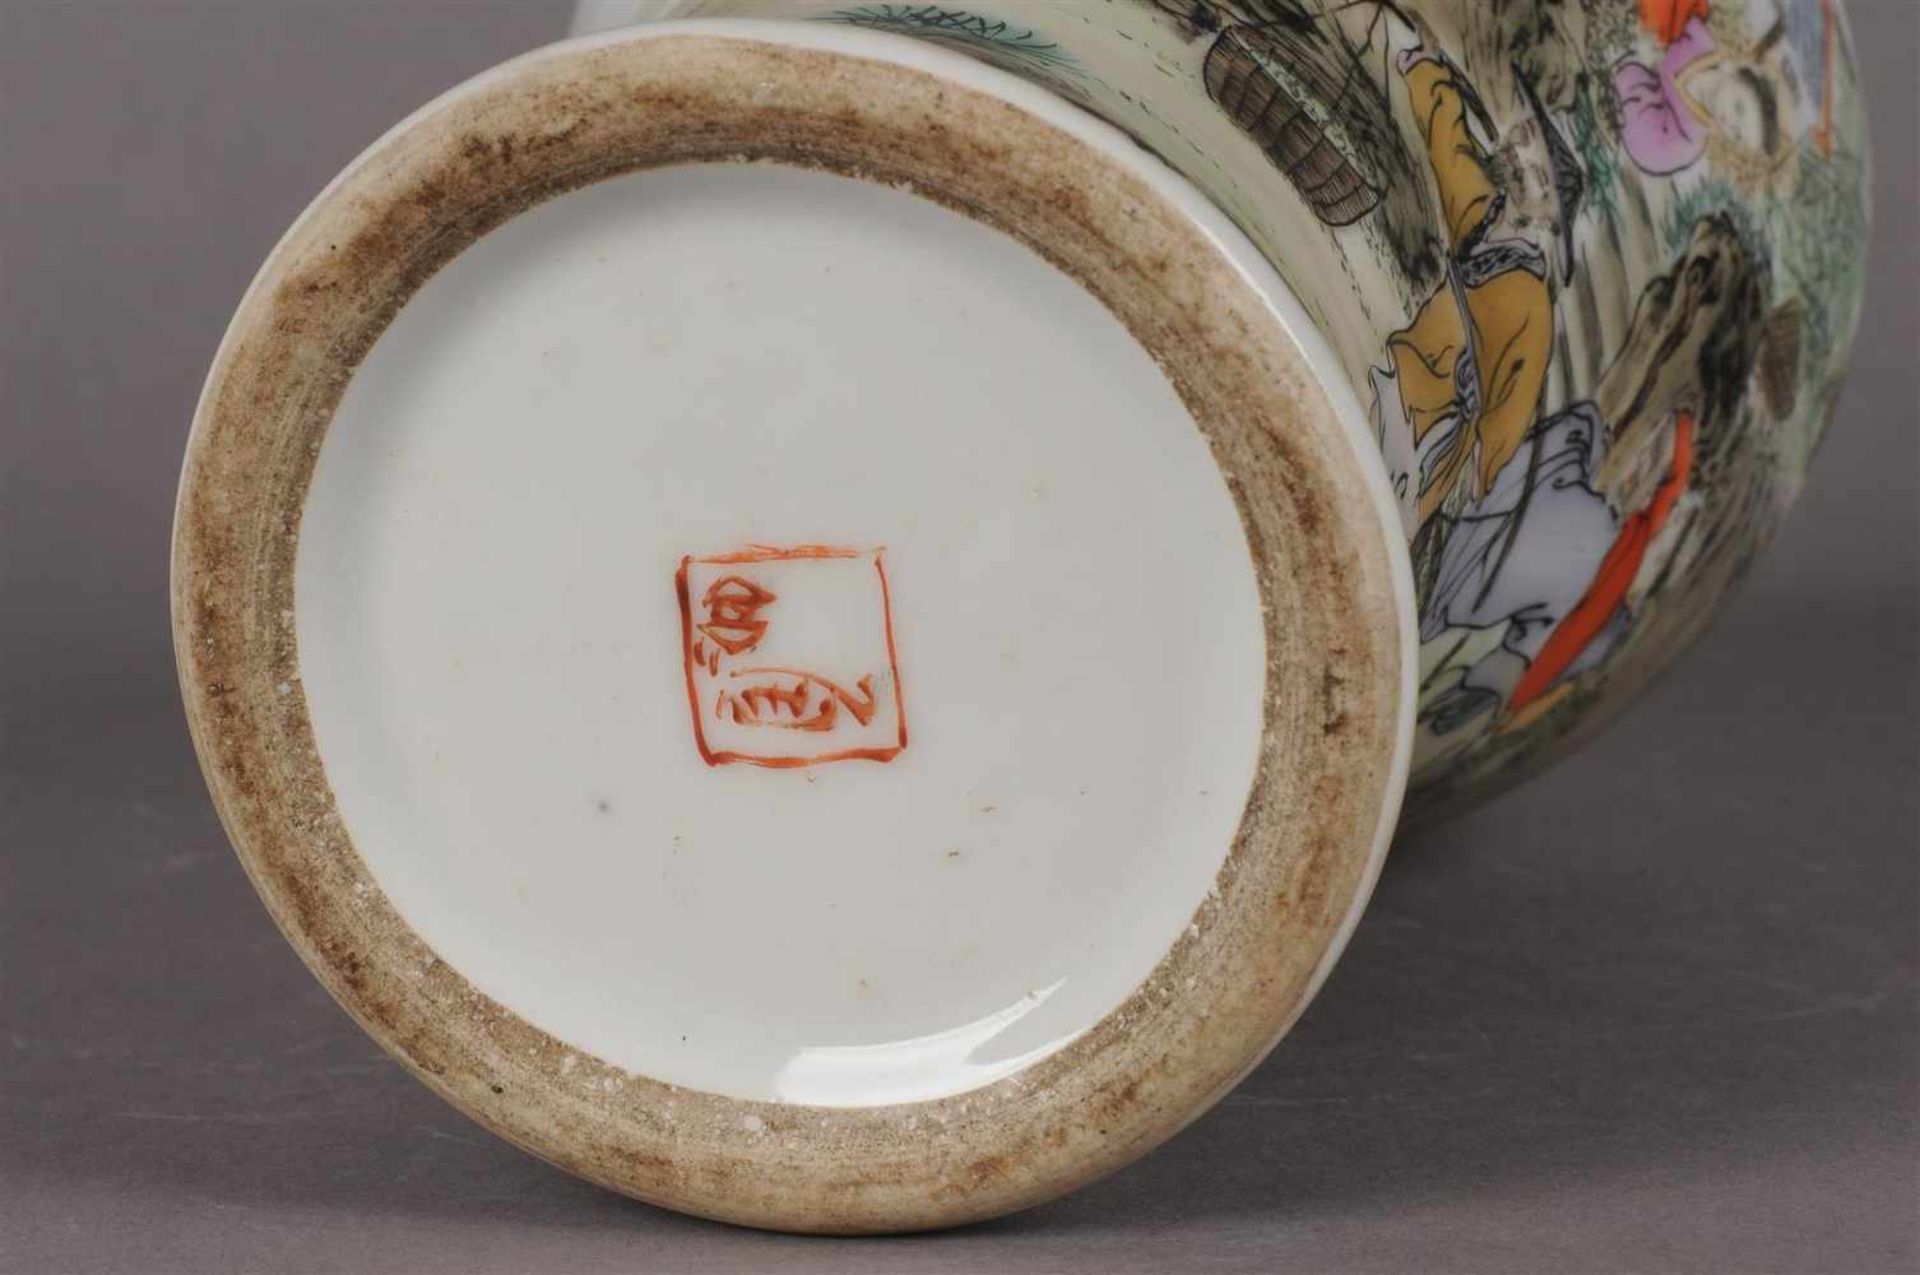 Polychroom porseleinen Meiping vaas met figuraal landschaps decor en tekst, gemerkt met zegelmerk, - Bild 4 aus 6